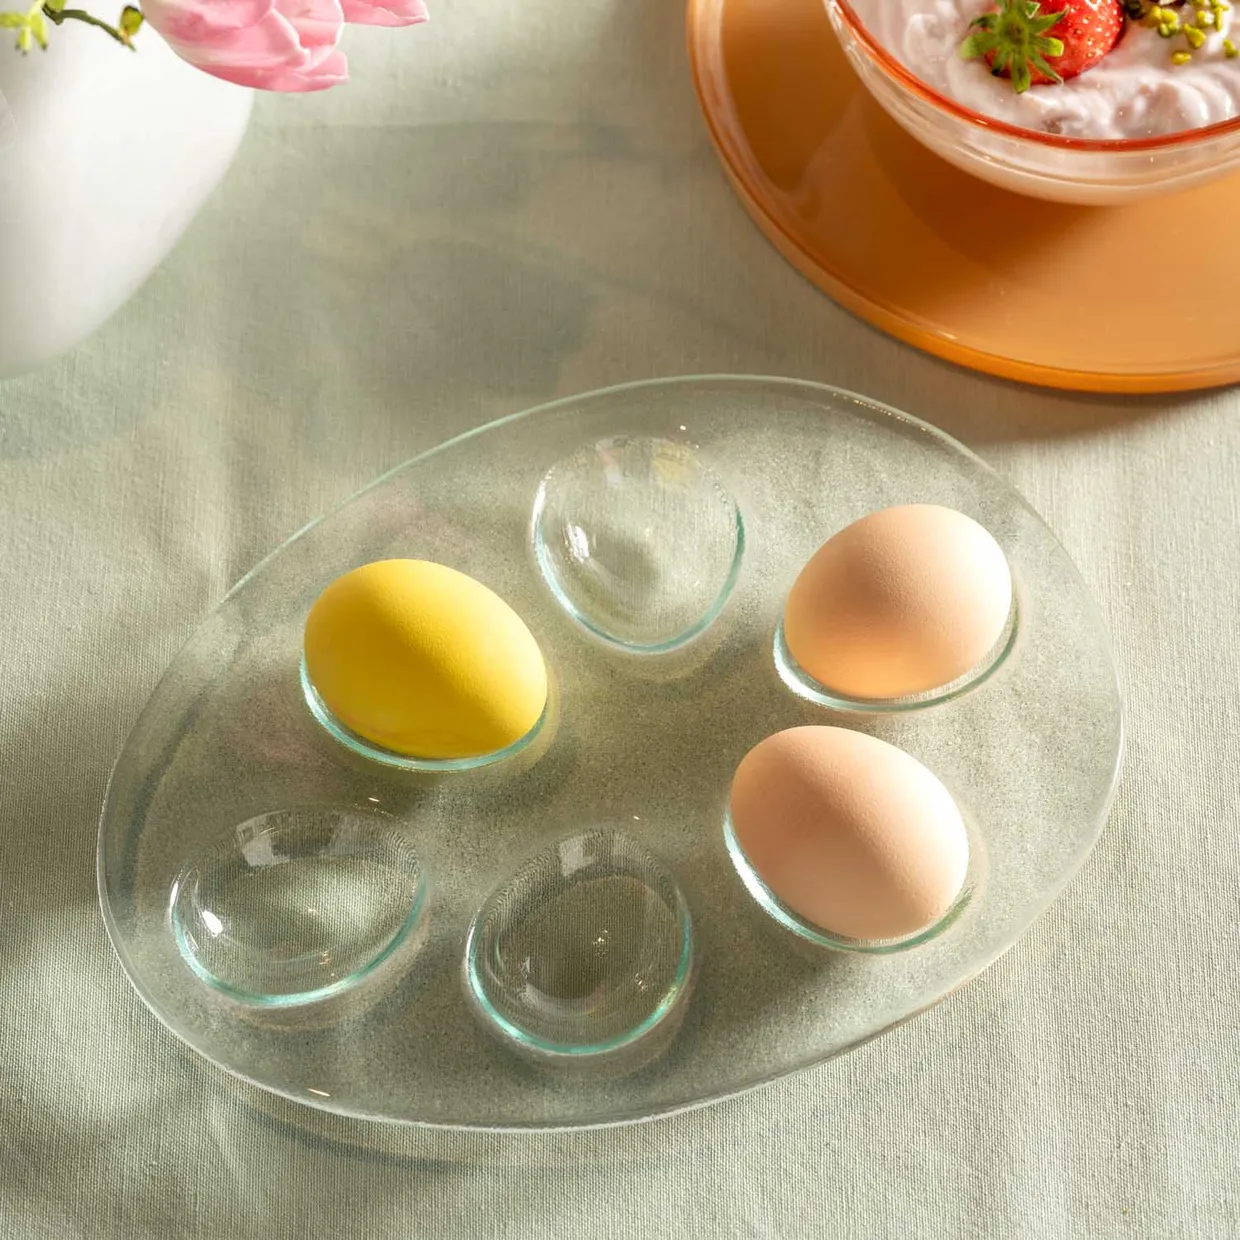 Glazen schaal voor gevulde eieren - 24 cm